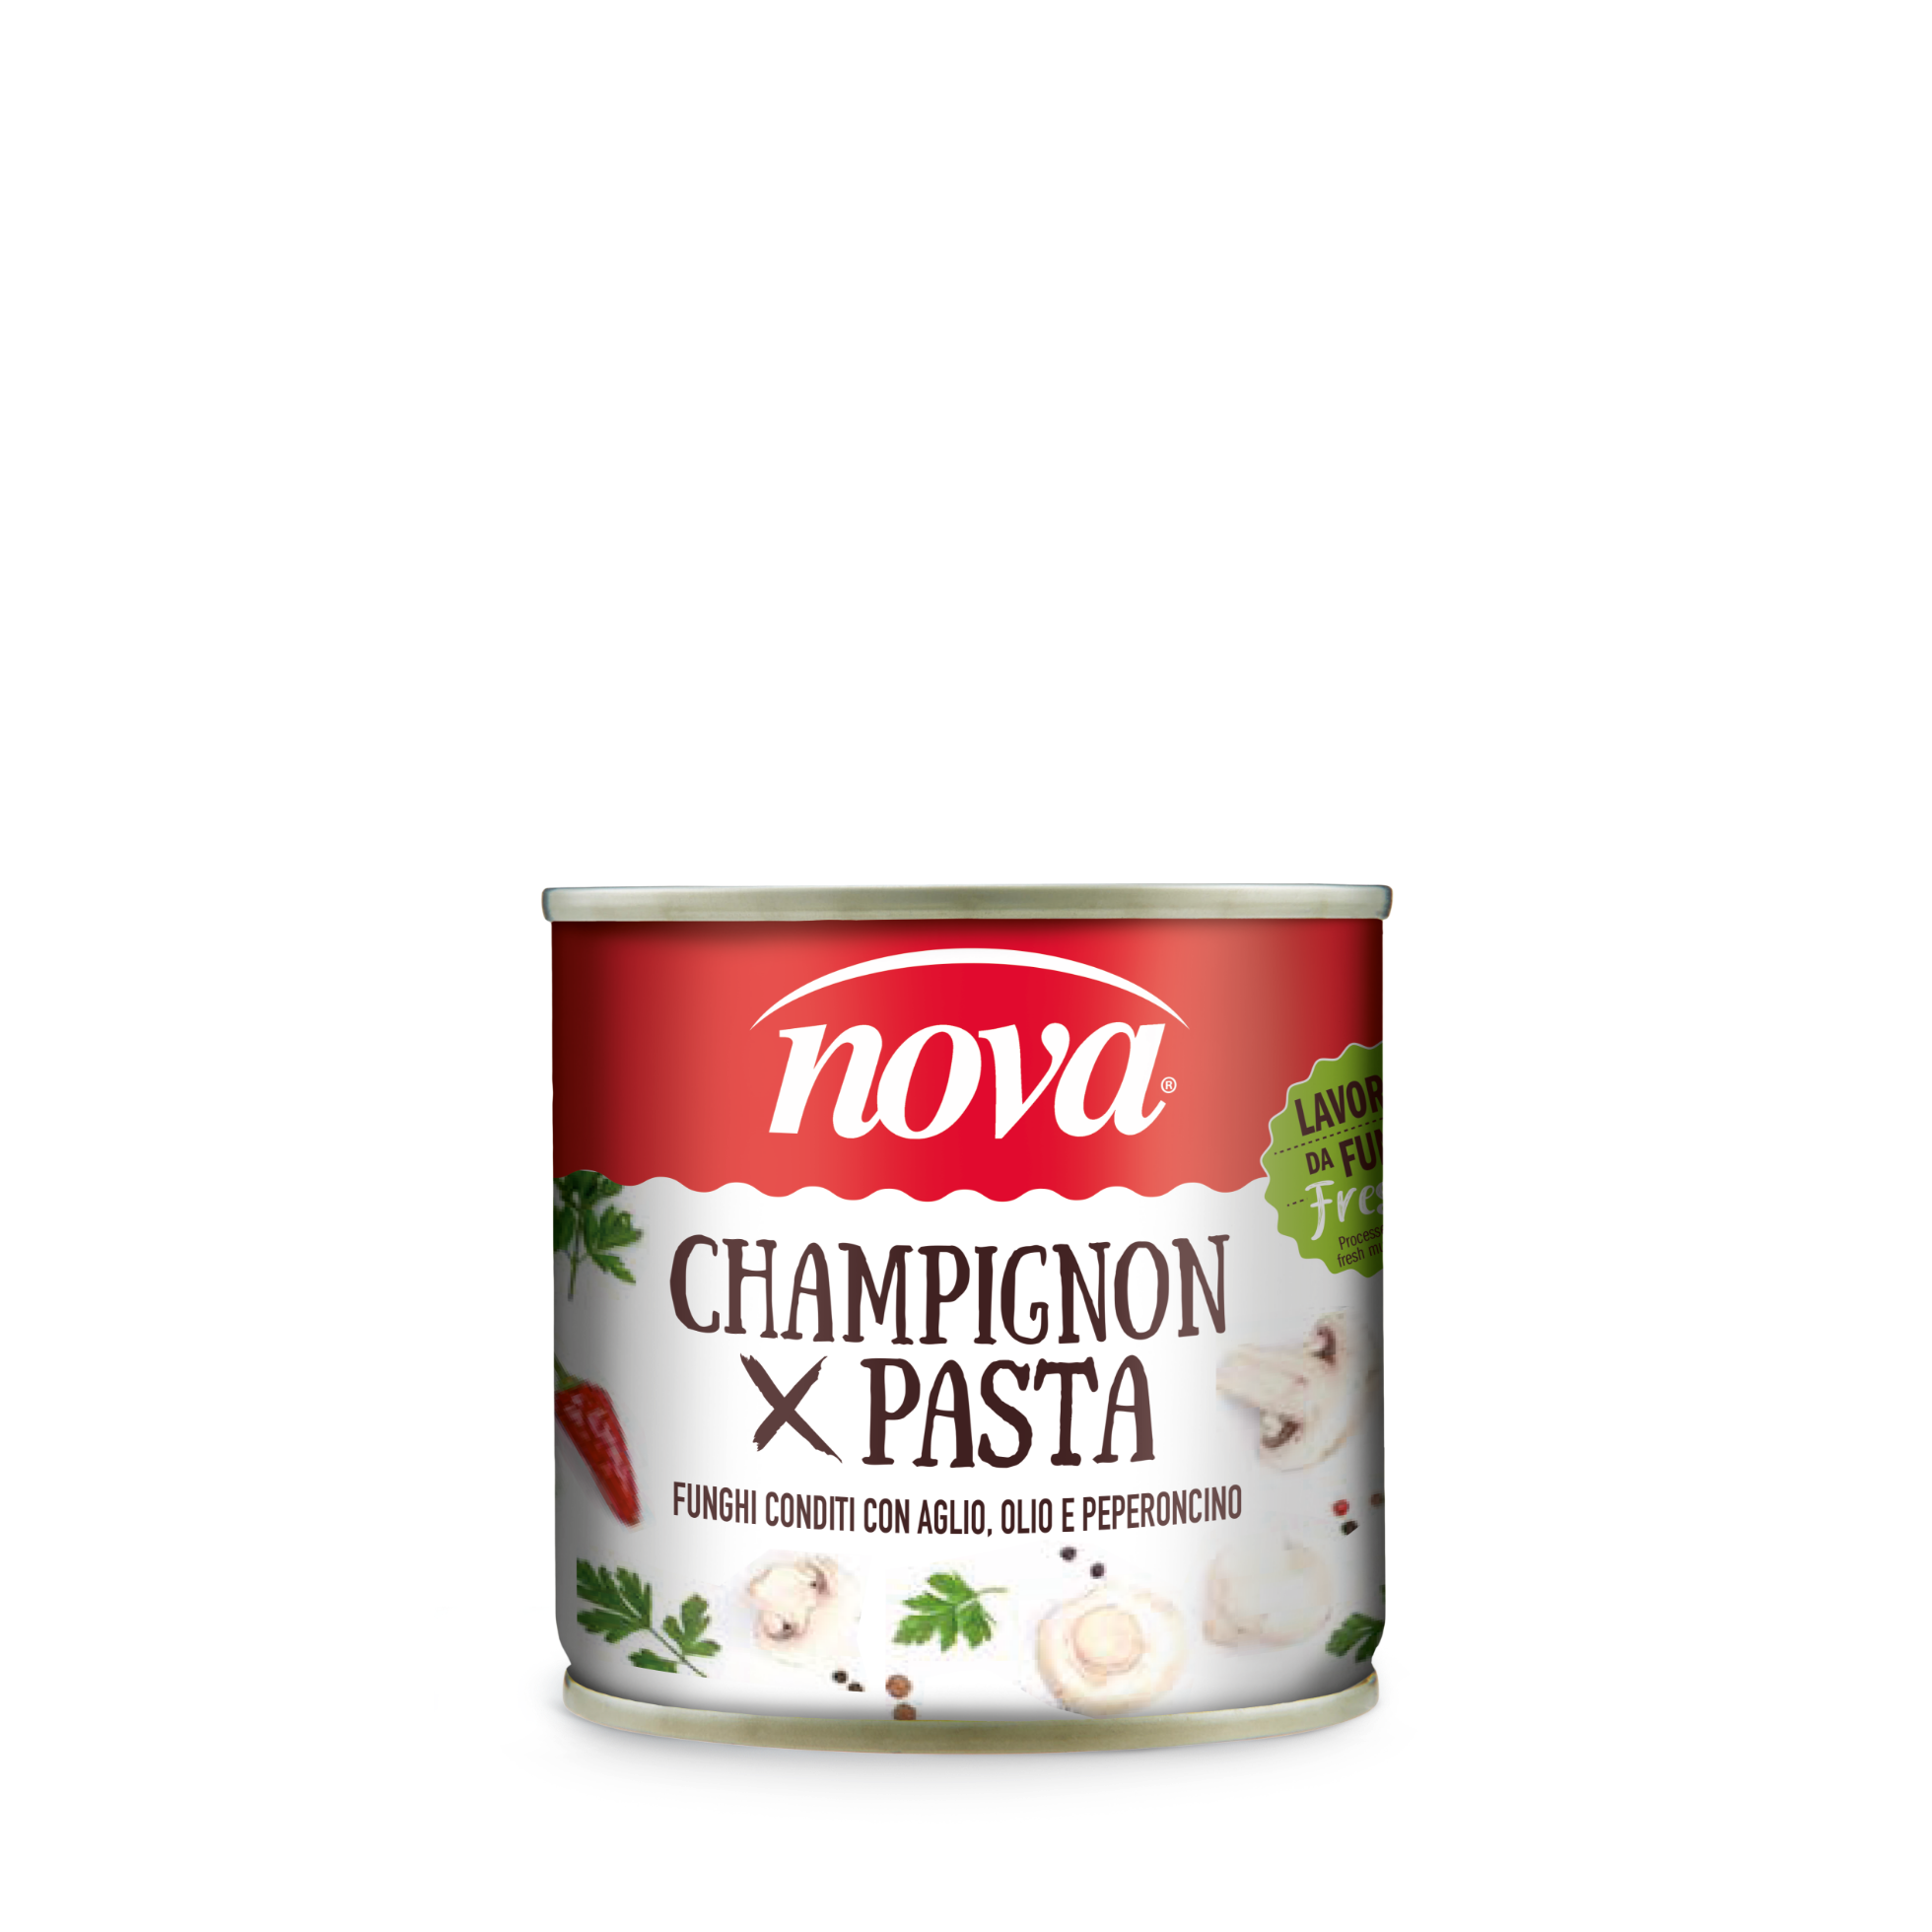 Champignon mushrooms for Pasta